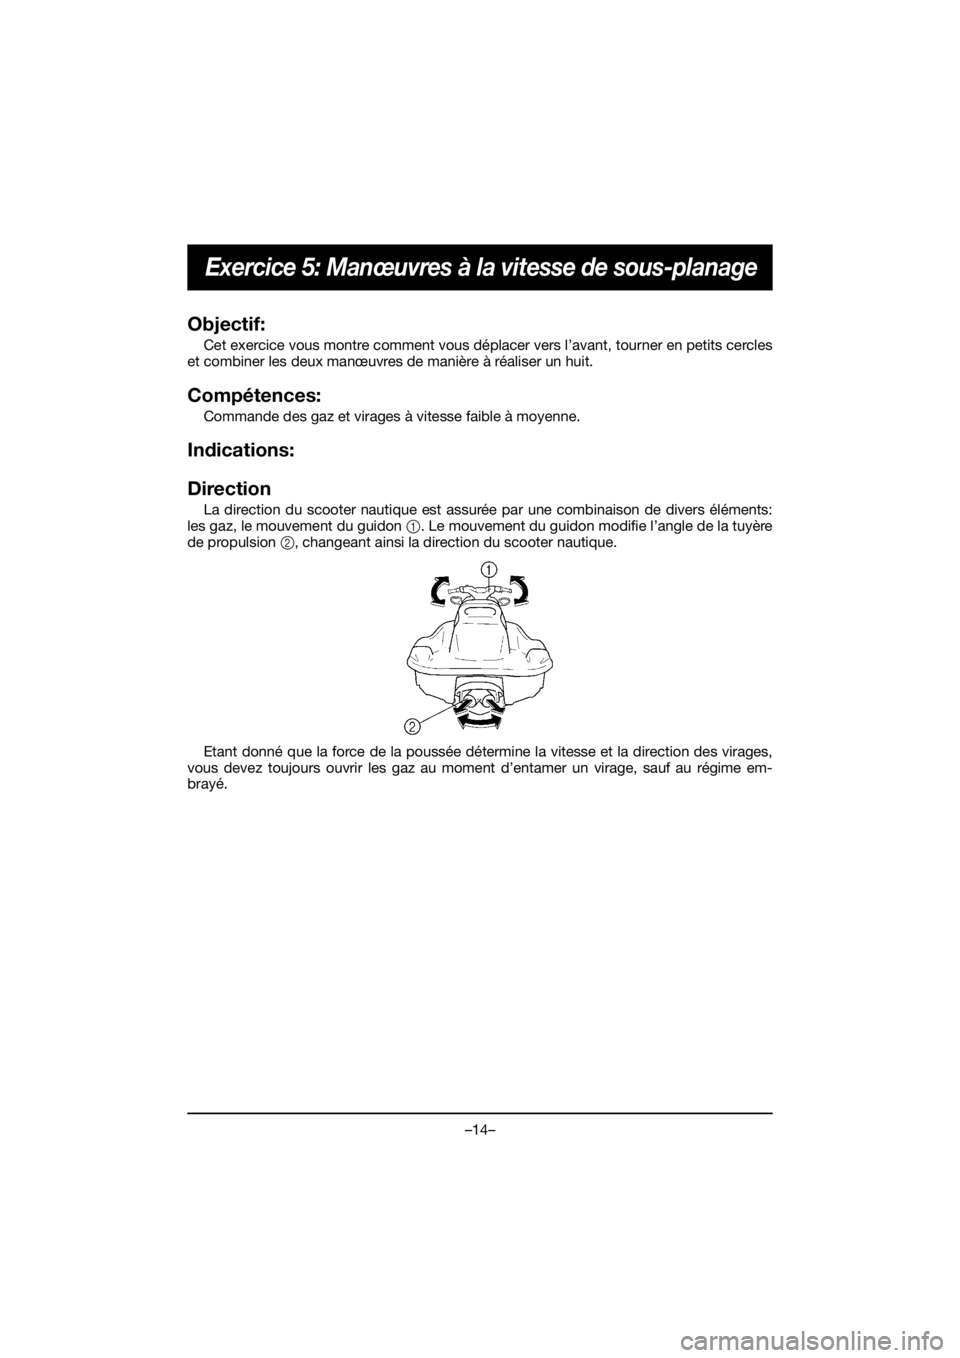 YAMAHA EXR 2020  Notices Demploi (in French) –14–
Exercice 5: Manœuvres à la vitesse de sous-planage
Objectif: 
Cet exercice vous montre comment vous déplacer vers l’avant, tourner en petits cercles
et combiner les deux manœuvres de ma